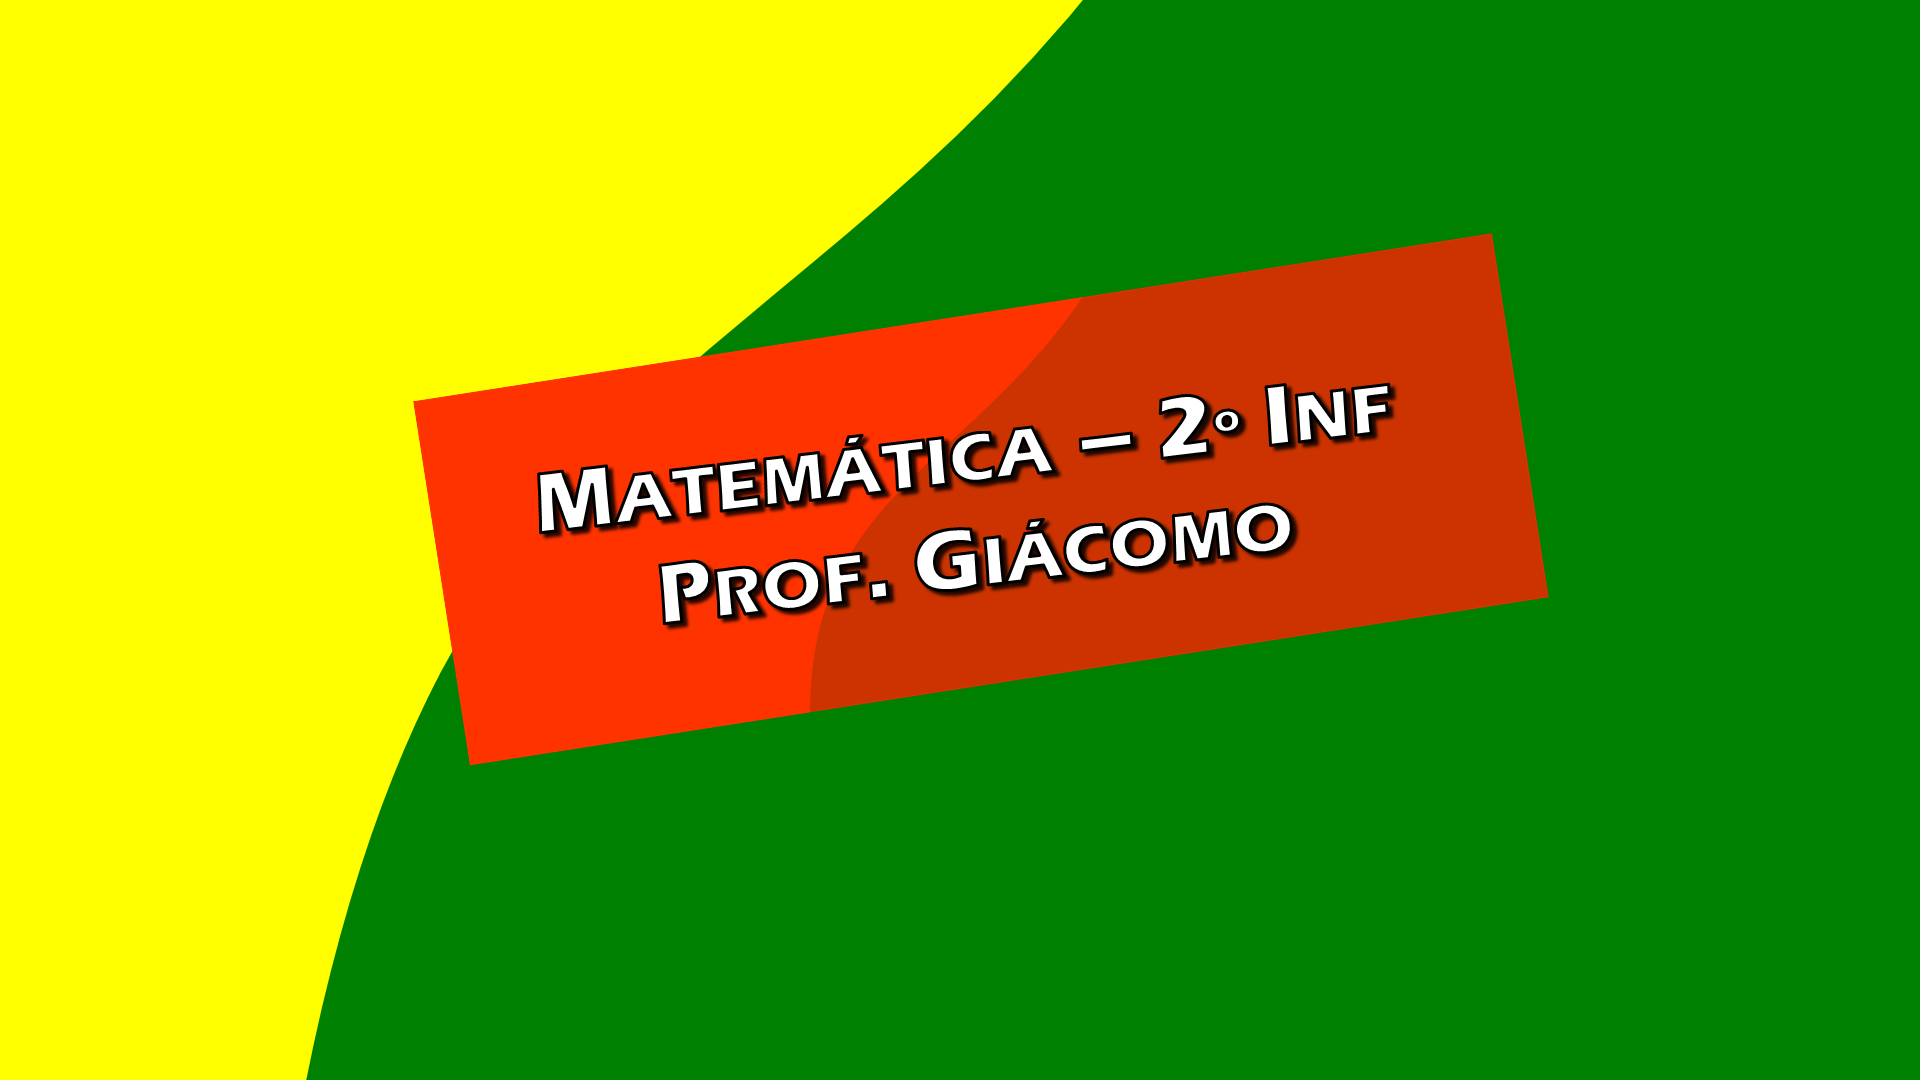 Matemática - 2o INFORMÁTICA - Prof. Giácomo